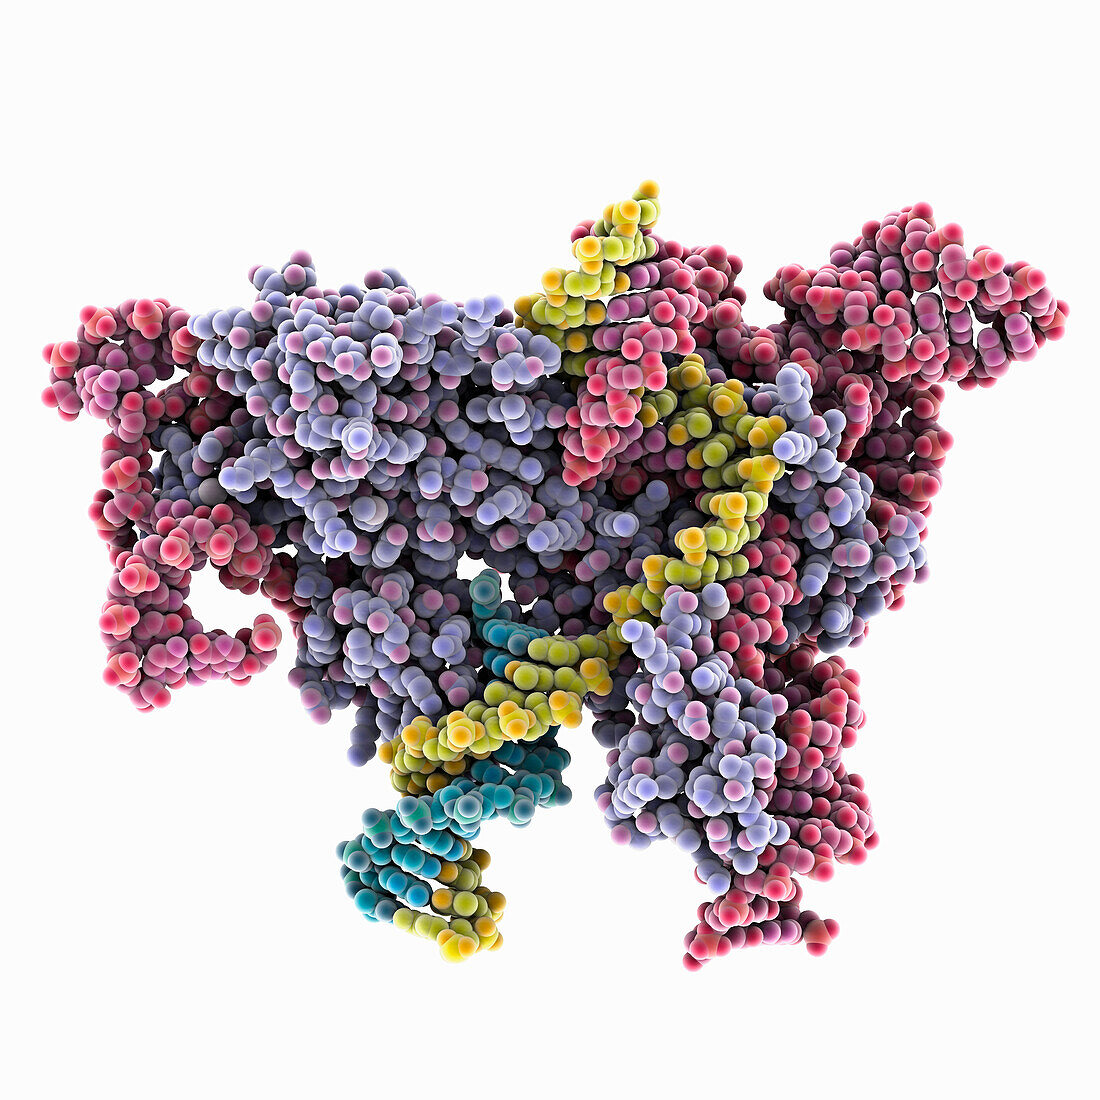 OgeuIscB-OMEGA RNA-target DNA complex, illustration